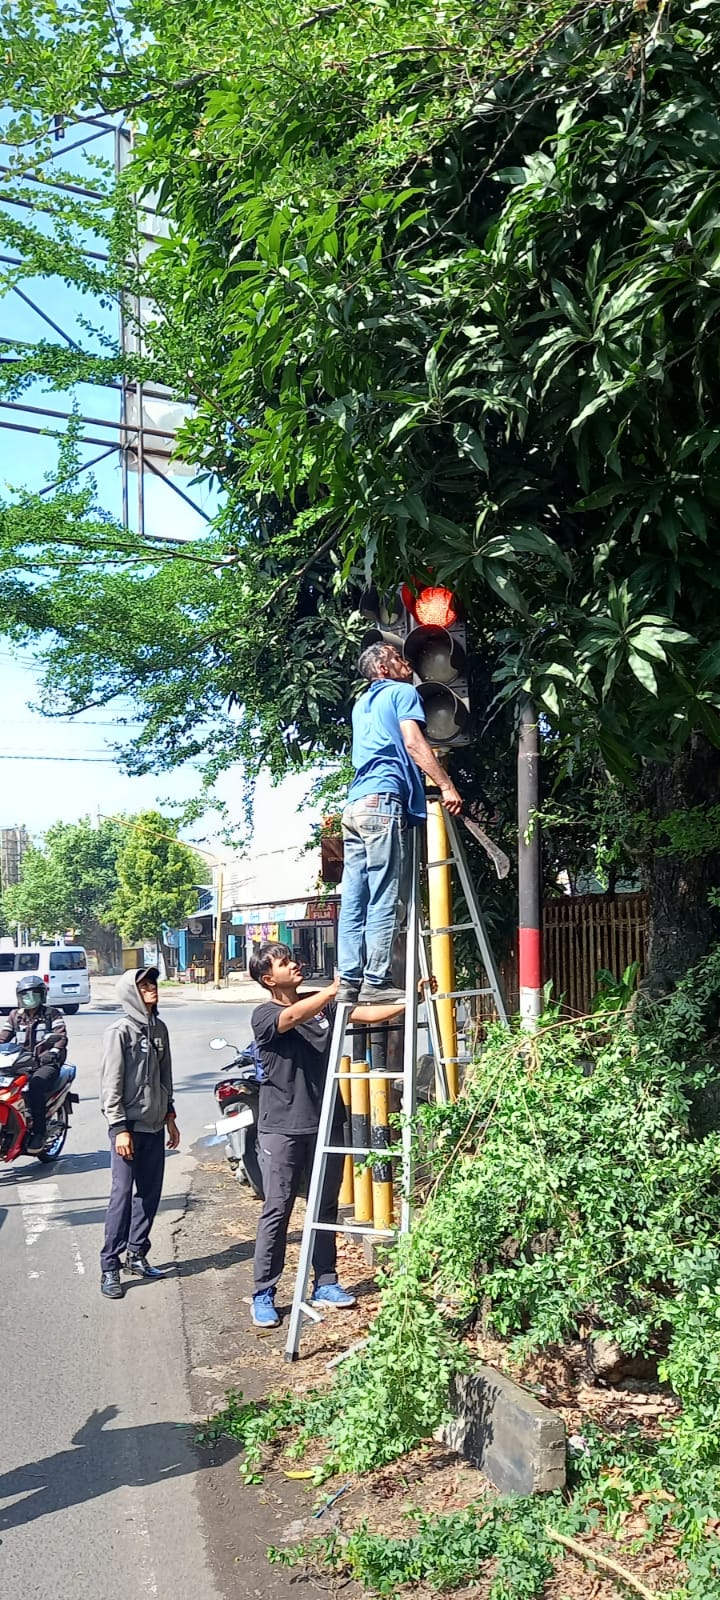 Menindaklanjuti aduan dari masyarakat terkait beberapa lampu lalu lintas (bangjo) yang tertutup ranting pohon. Dinas Perhubungan (Dishub) Kabupaten (Jurnalindo.com)